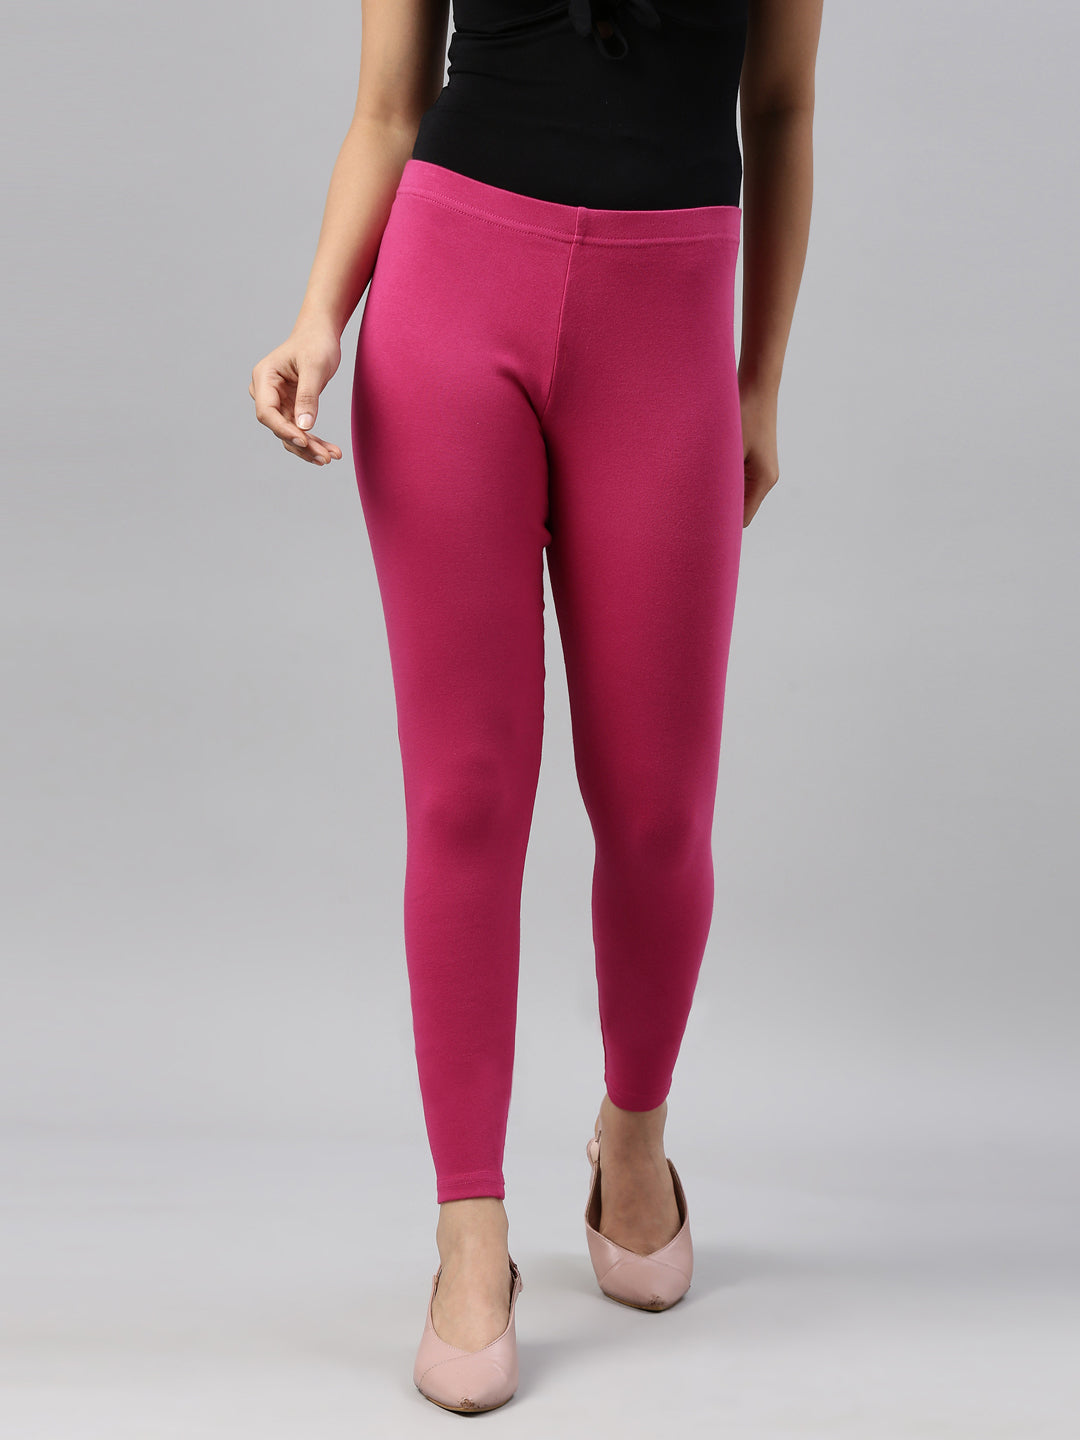 Ribbed Seamless Leggings - PinkS  Seamless leggings, Pink leggings, V shape